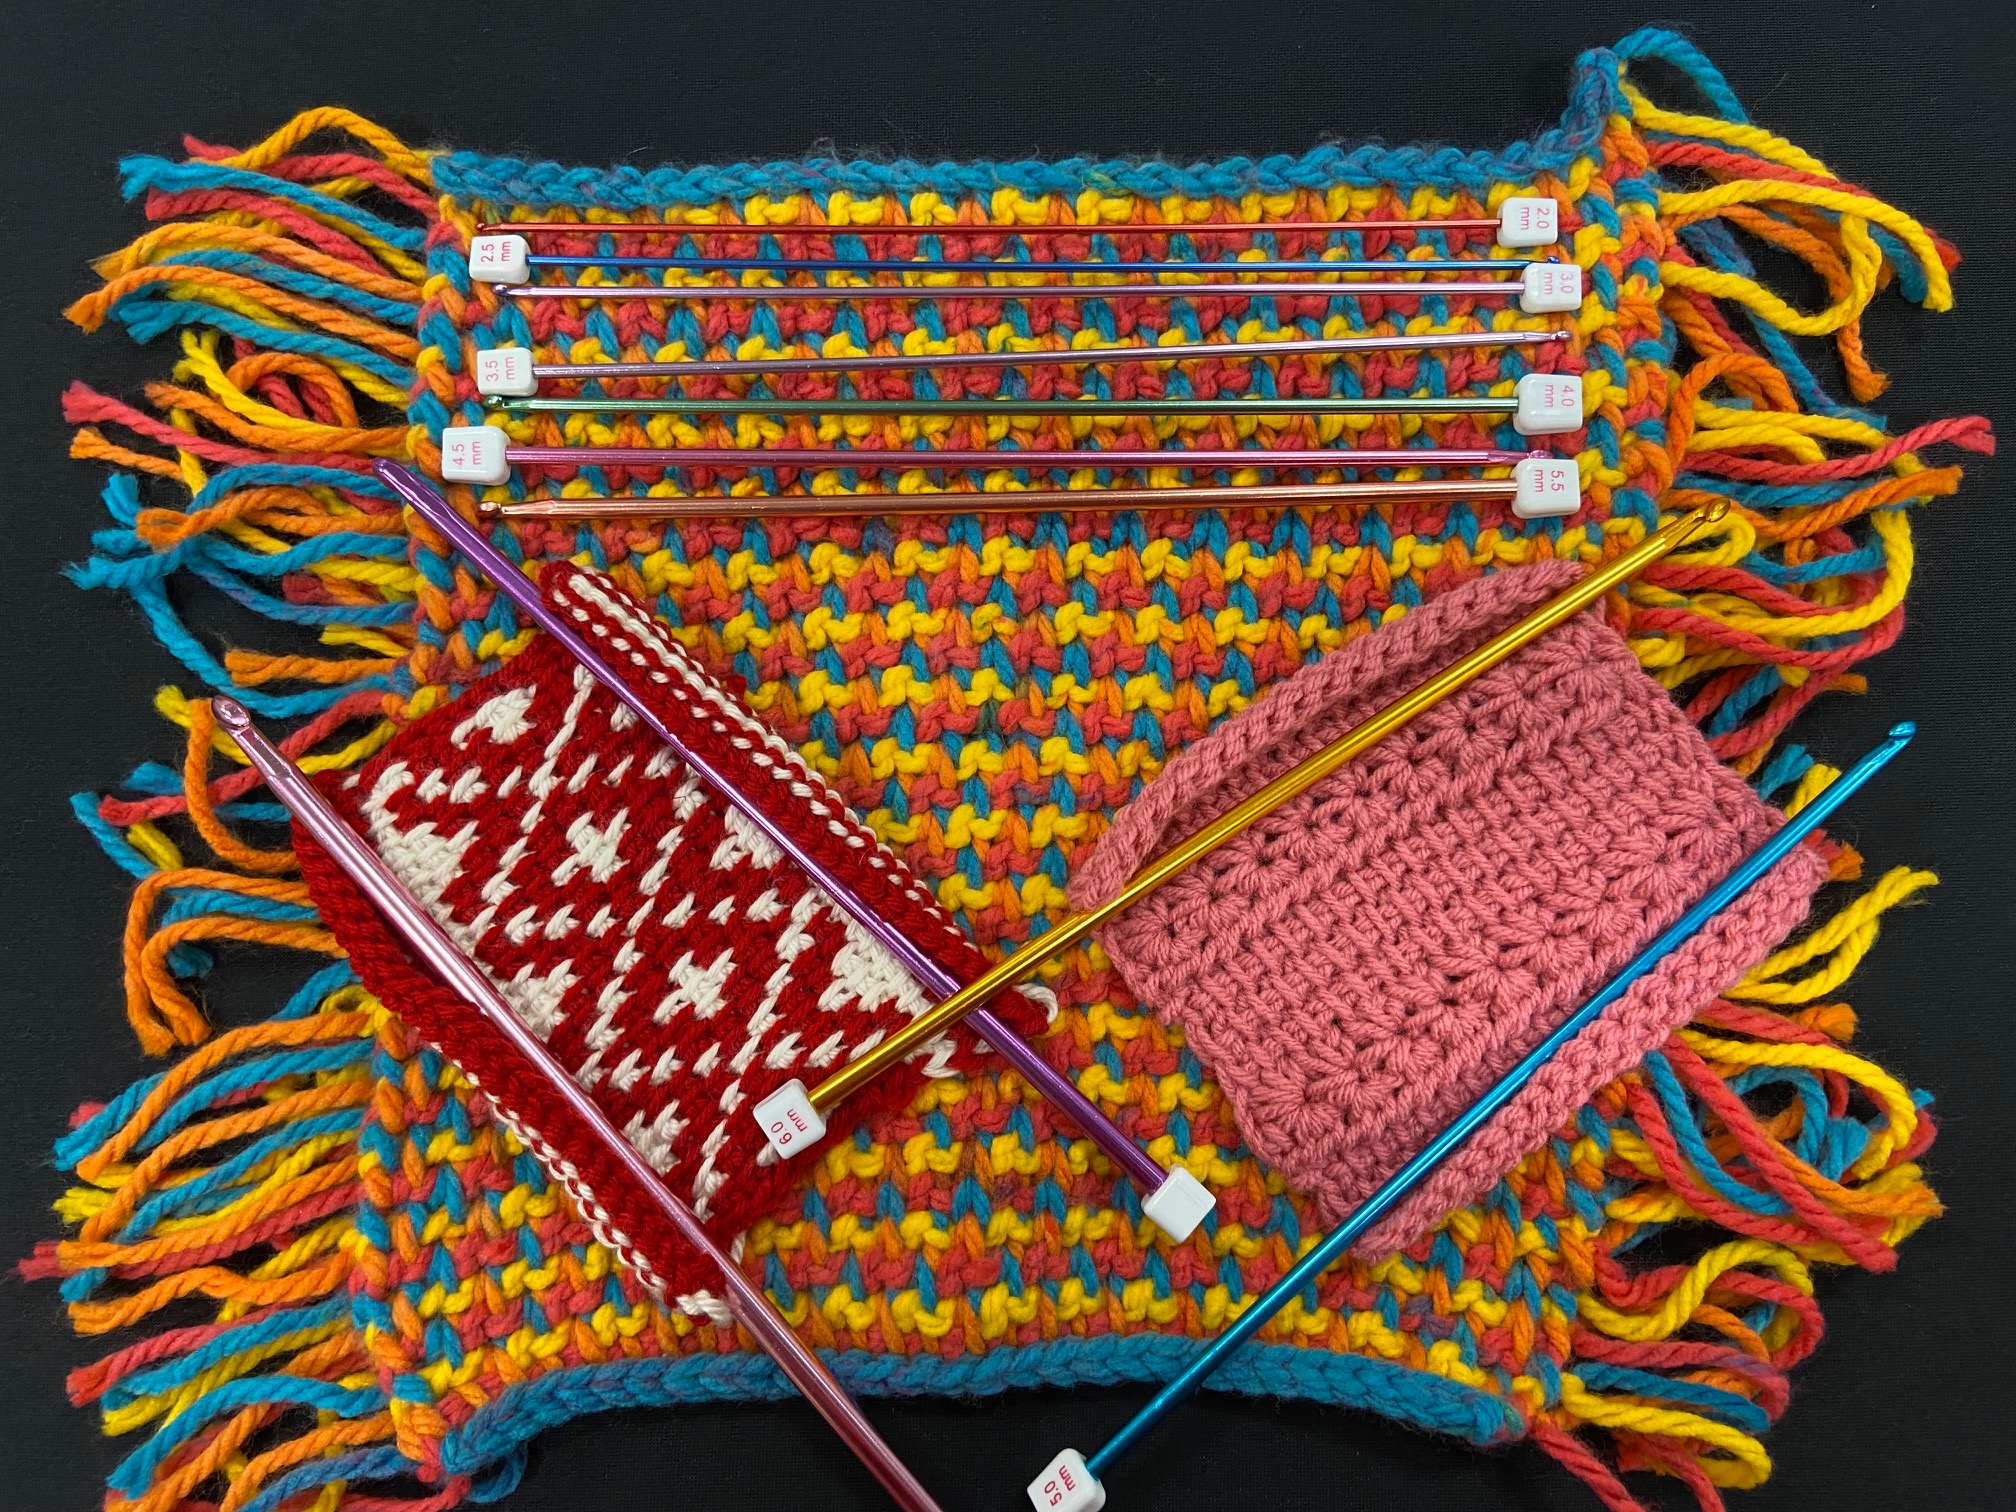 Three Tunisian Crochet projects, and crochet needles